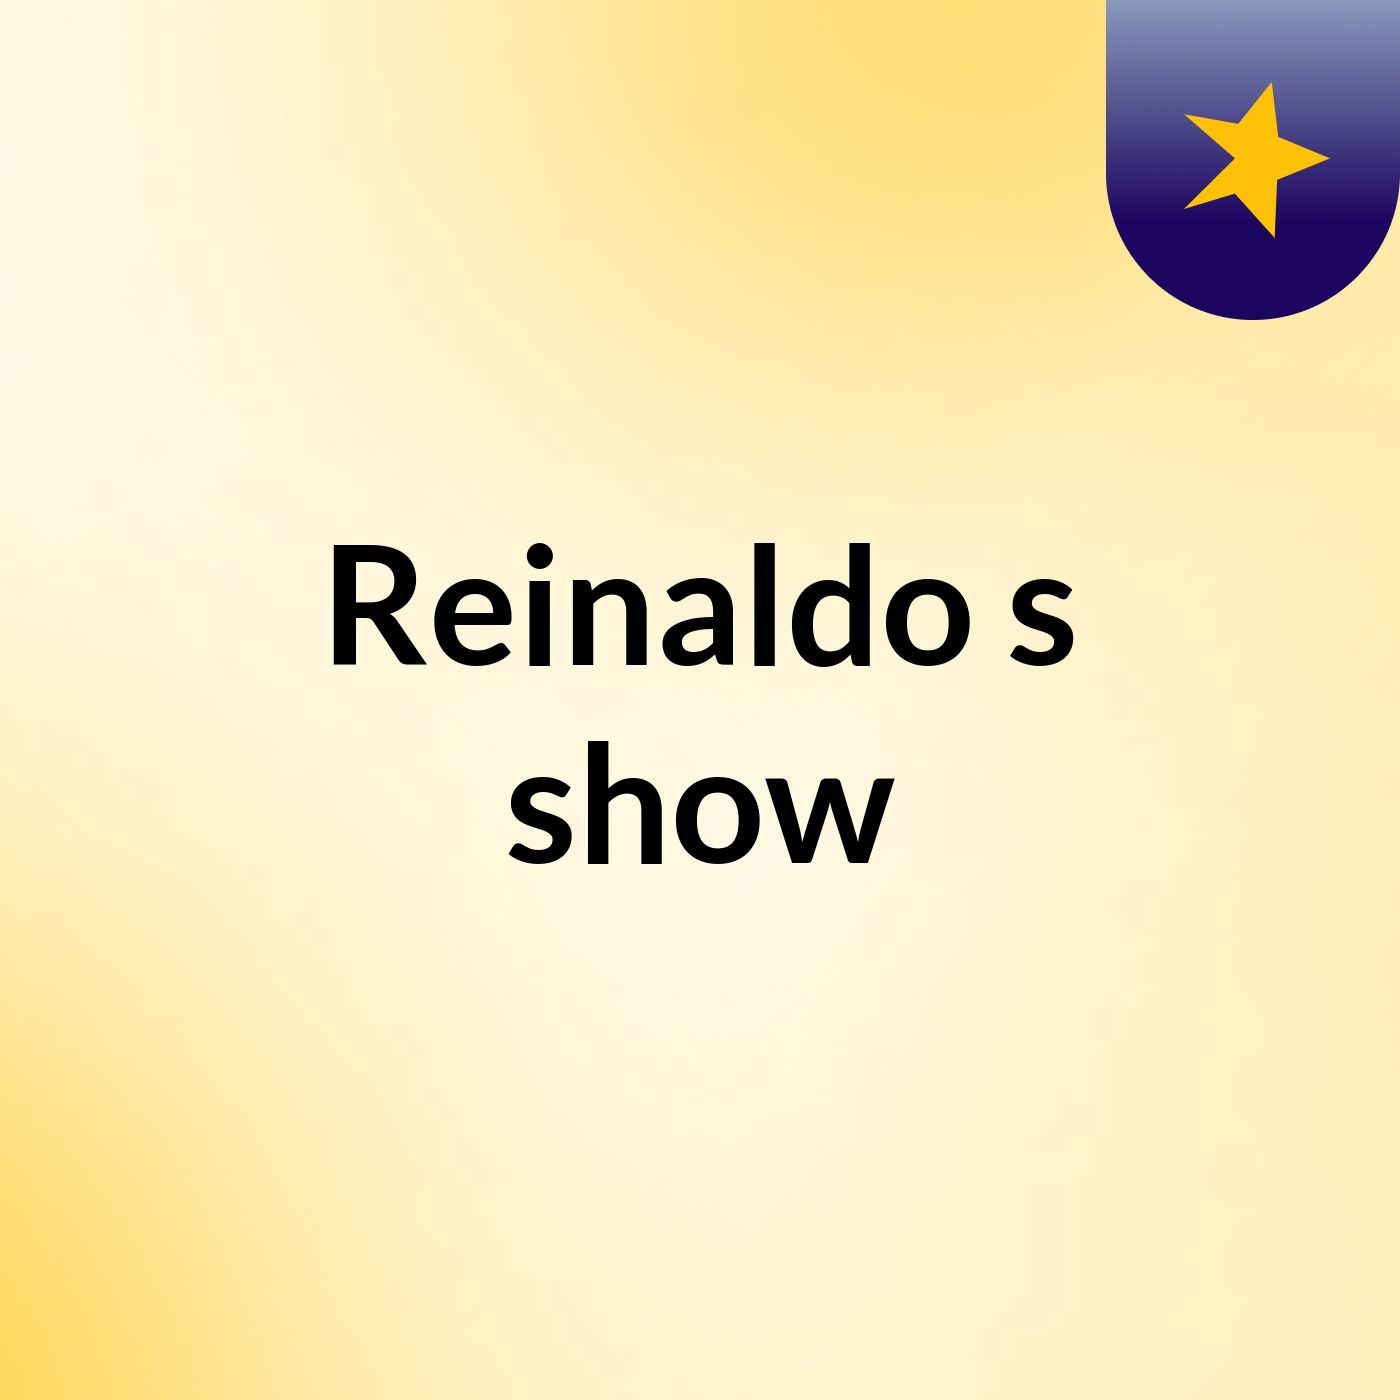 Reinaldo's show